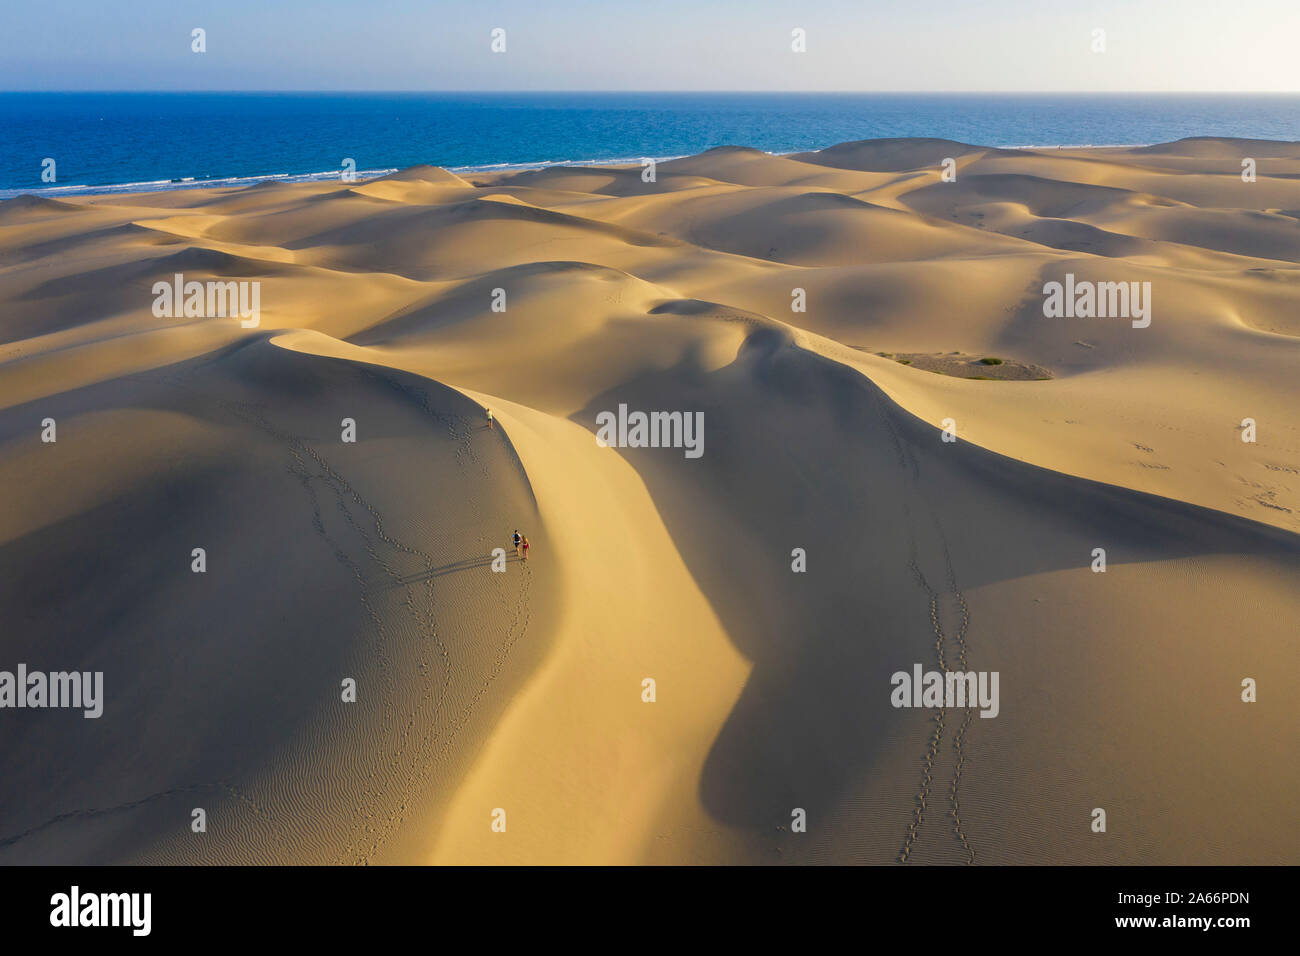 Spagna isole canarie Gran Canaria, Maspalomas le dune di sabbia Foto Stock